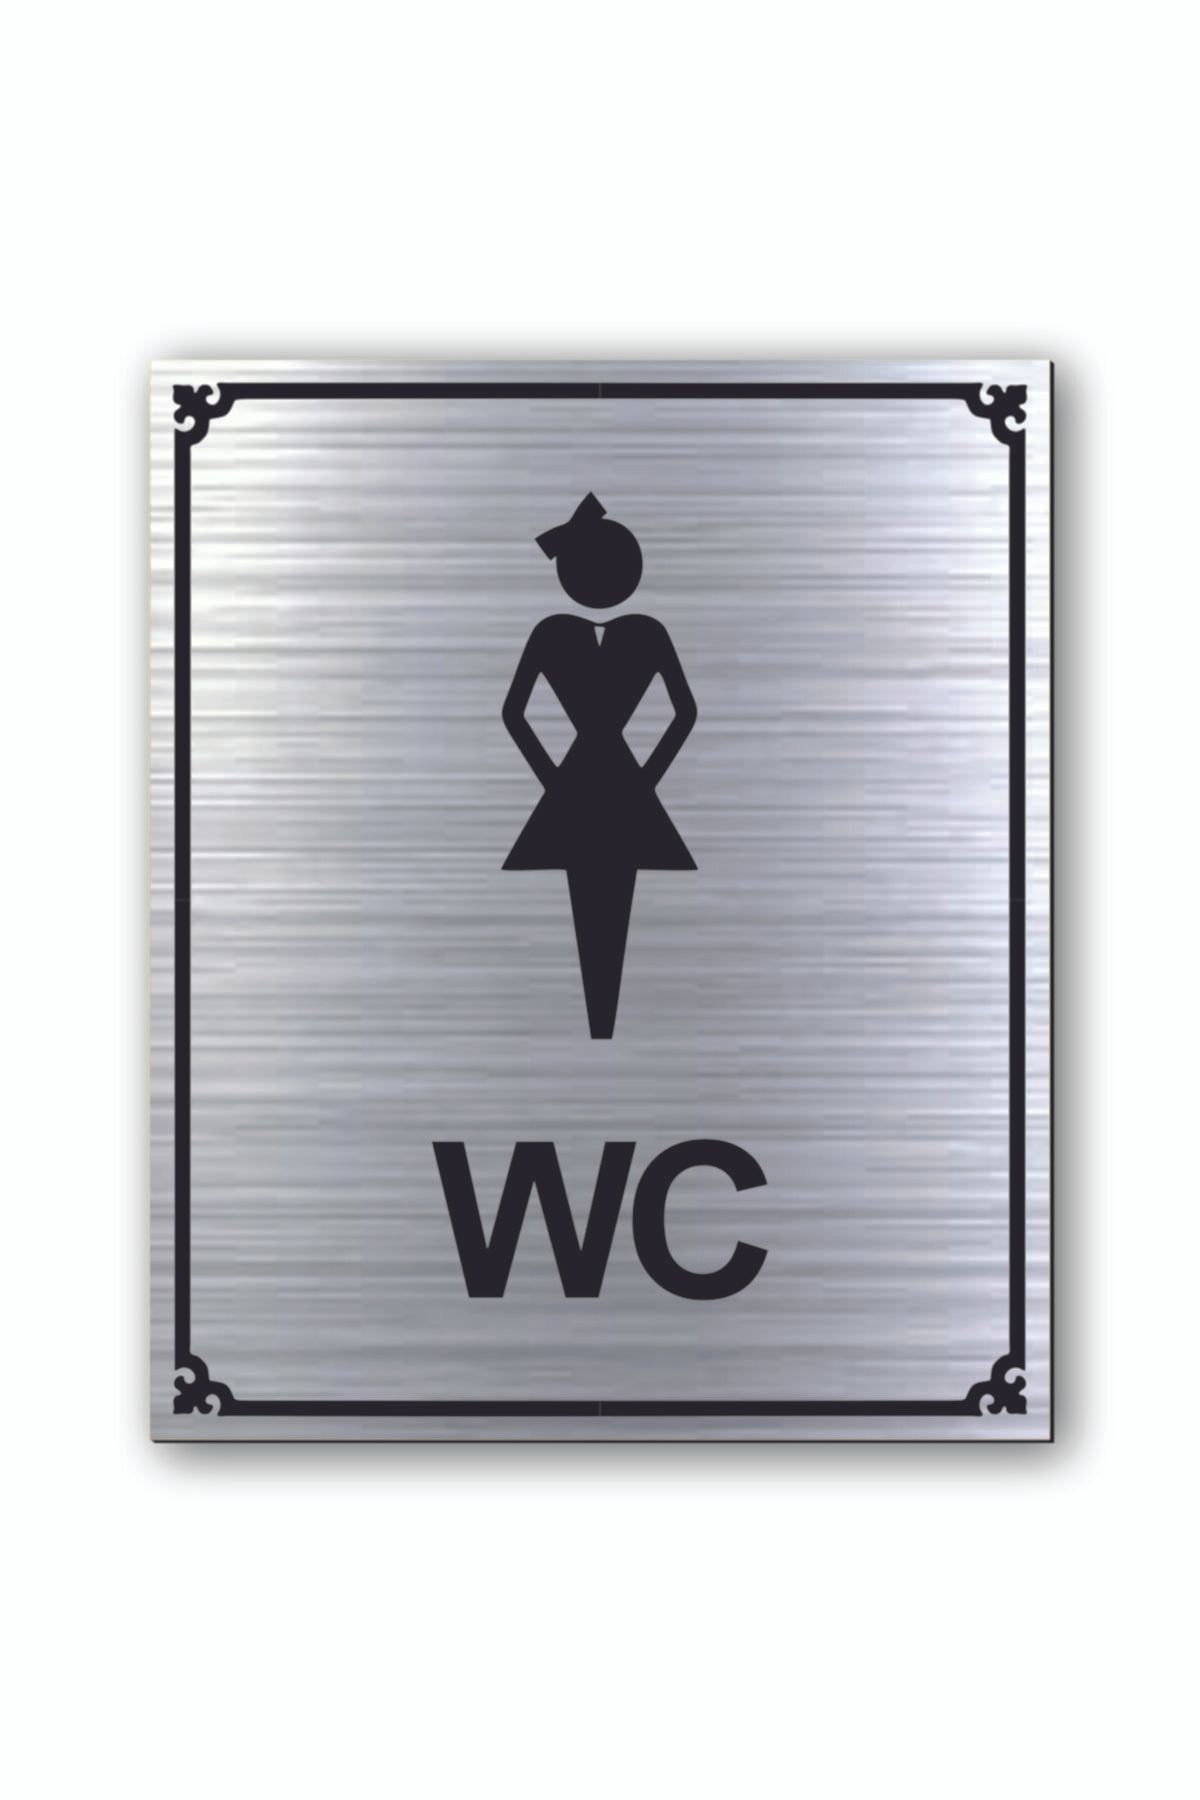 hediyemyoldaa Wc Kadın Tuvalet Kapı Uyarı - Yönlendirme Levhası Gümüş Renkli 10 cm X 12 cm cm Rezopal Levha